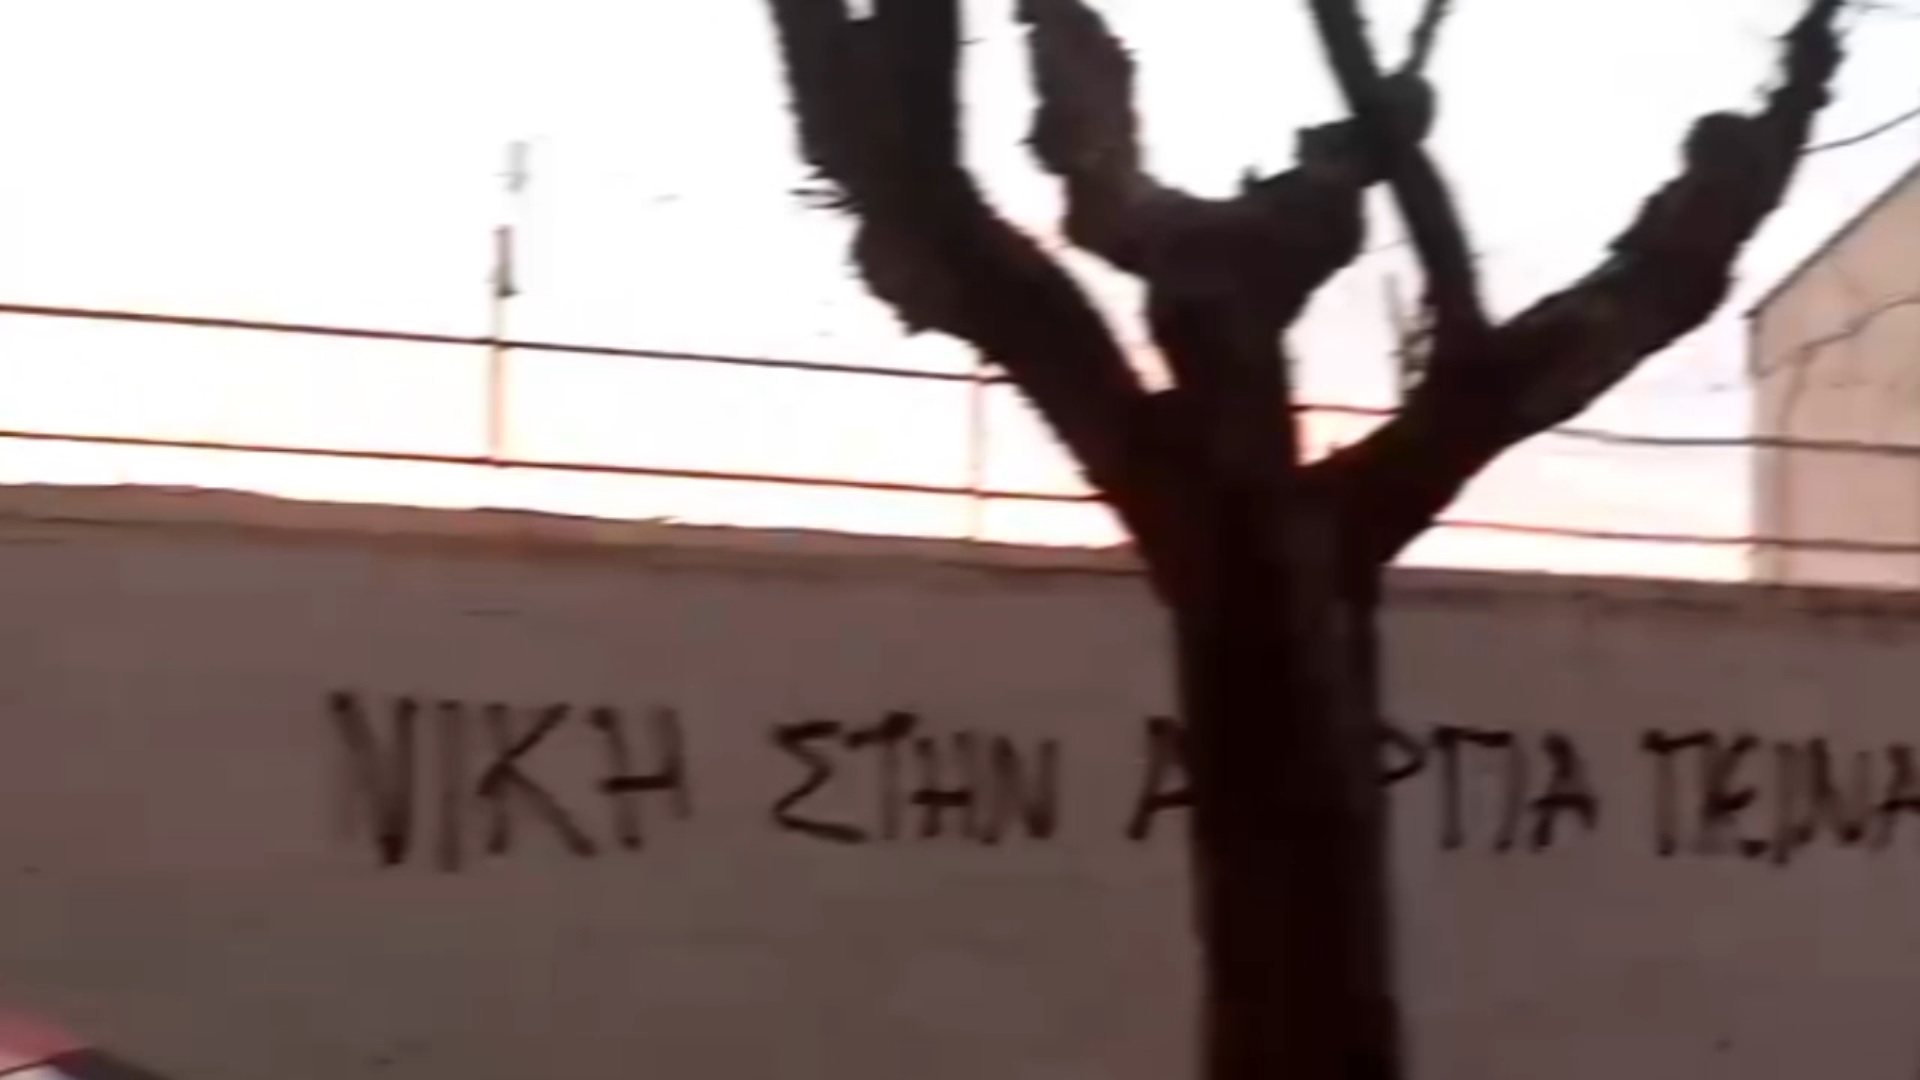 Παρέμβαση σε ΝΑΤΟϊκές εγκαταστάσεις στη Θεσσαλονίκη για τον Δ. Κουφοντίνα [VIDEO]